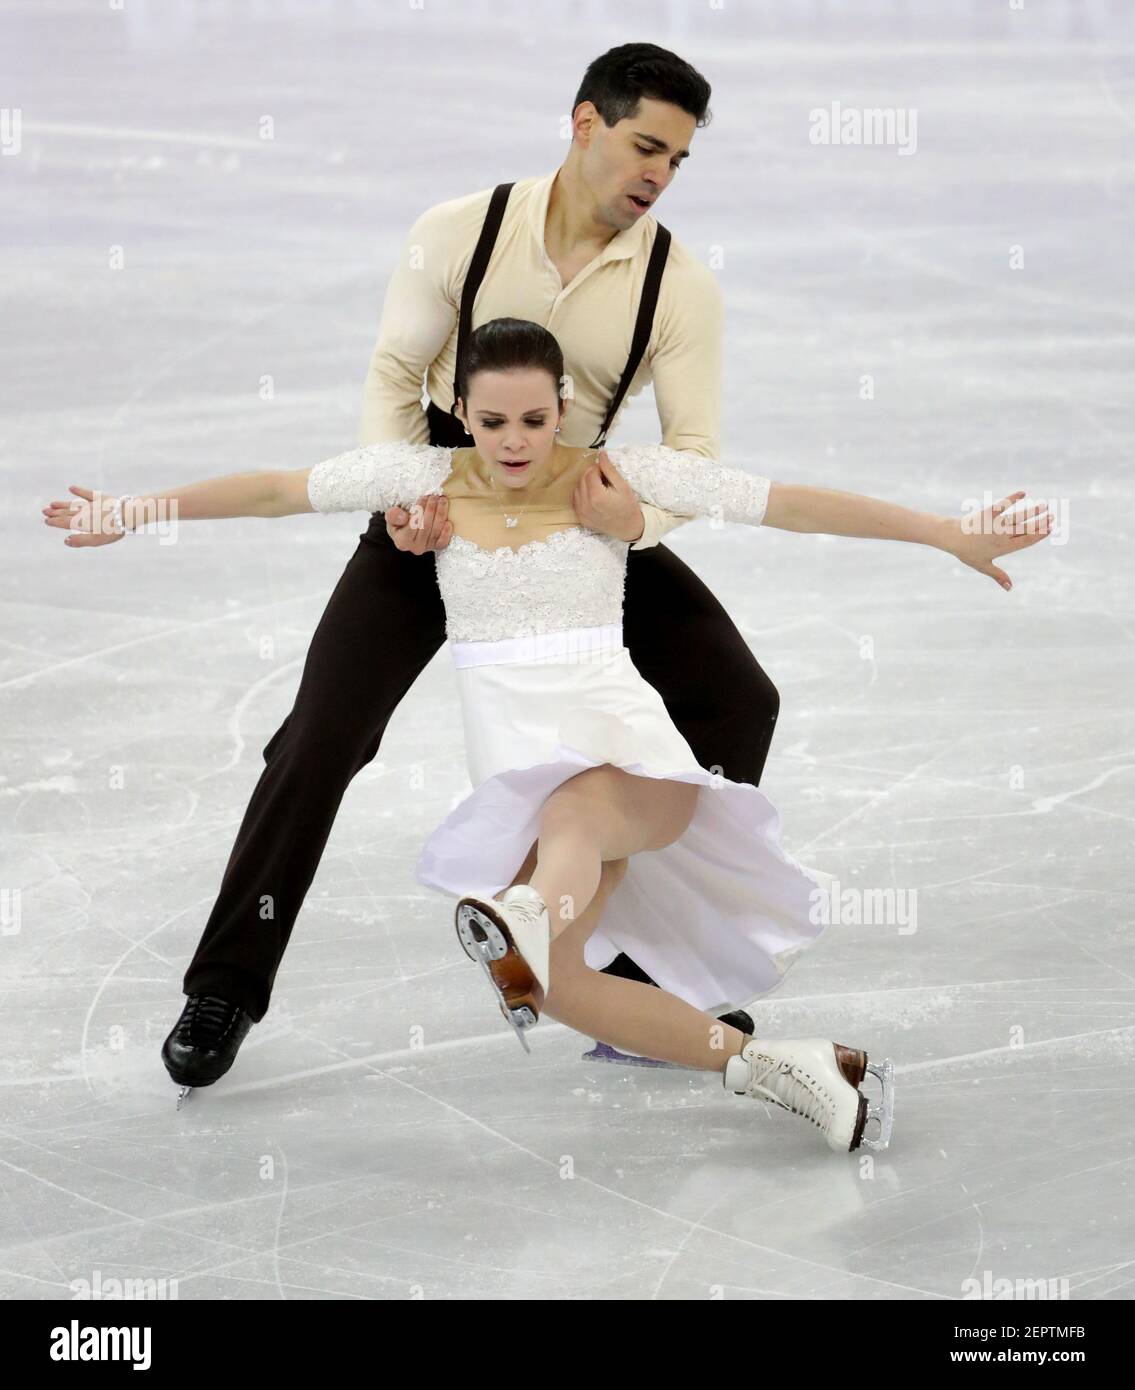 12 febbraio 2018; Pyeongchang, Corea del Sud; Anna Cappellini e Luca Lanotte  (ITA) si esibiscono nell'evento di pattinaggio su ghiaccio gratuito durante  i Giochi Olimpici invernali di Pyeongchang 2018 presso la Gangneung